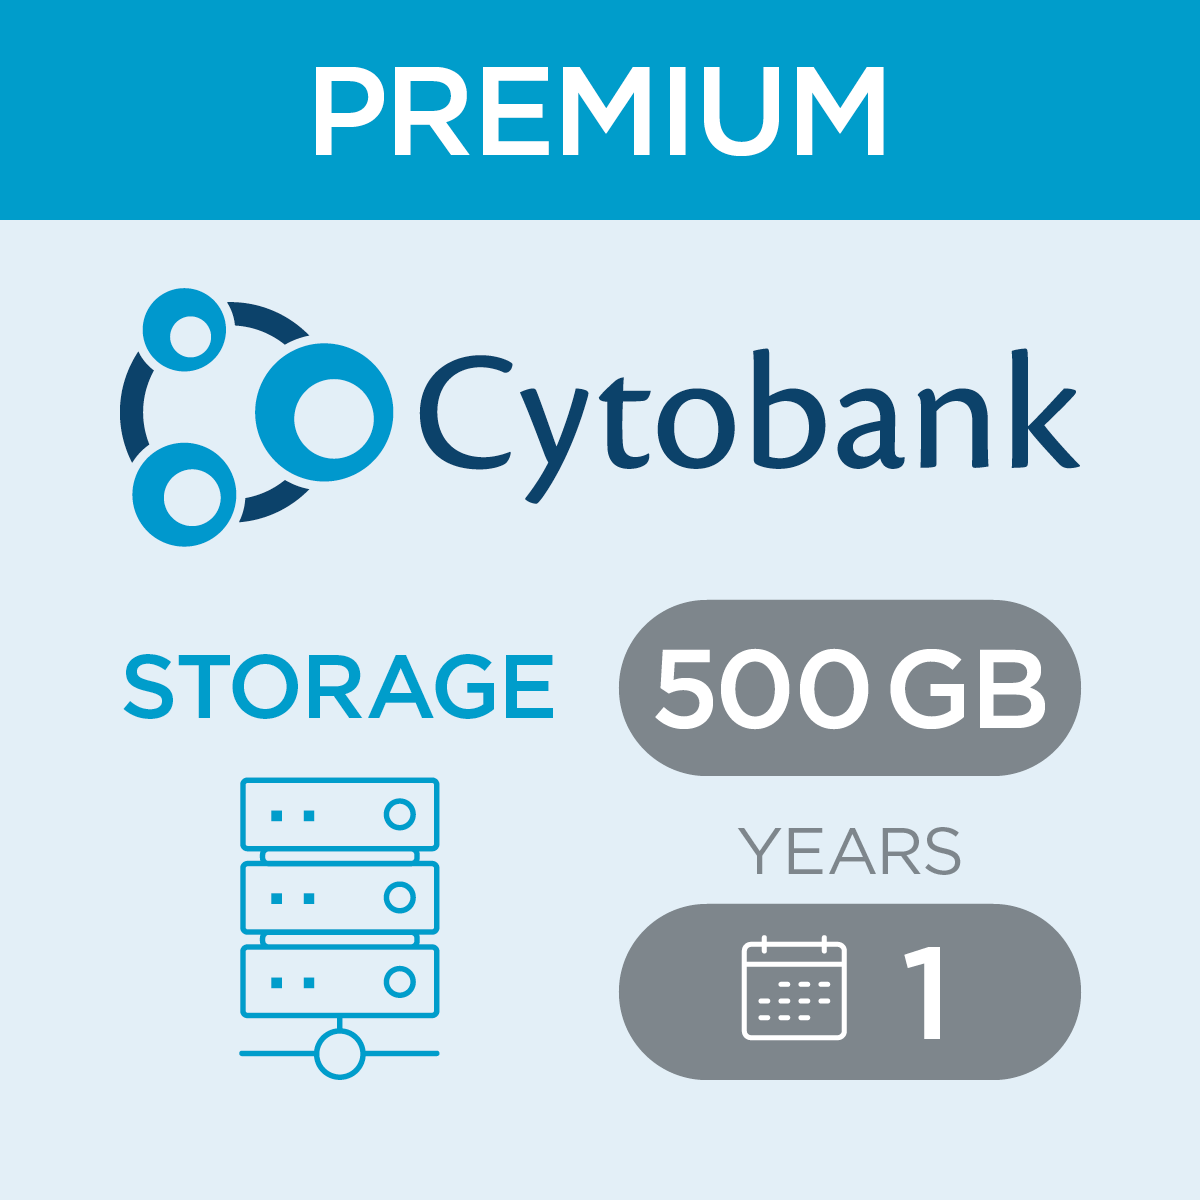 c47419, Cytobank Storage per 500 Gb for Premium, 1-year